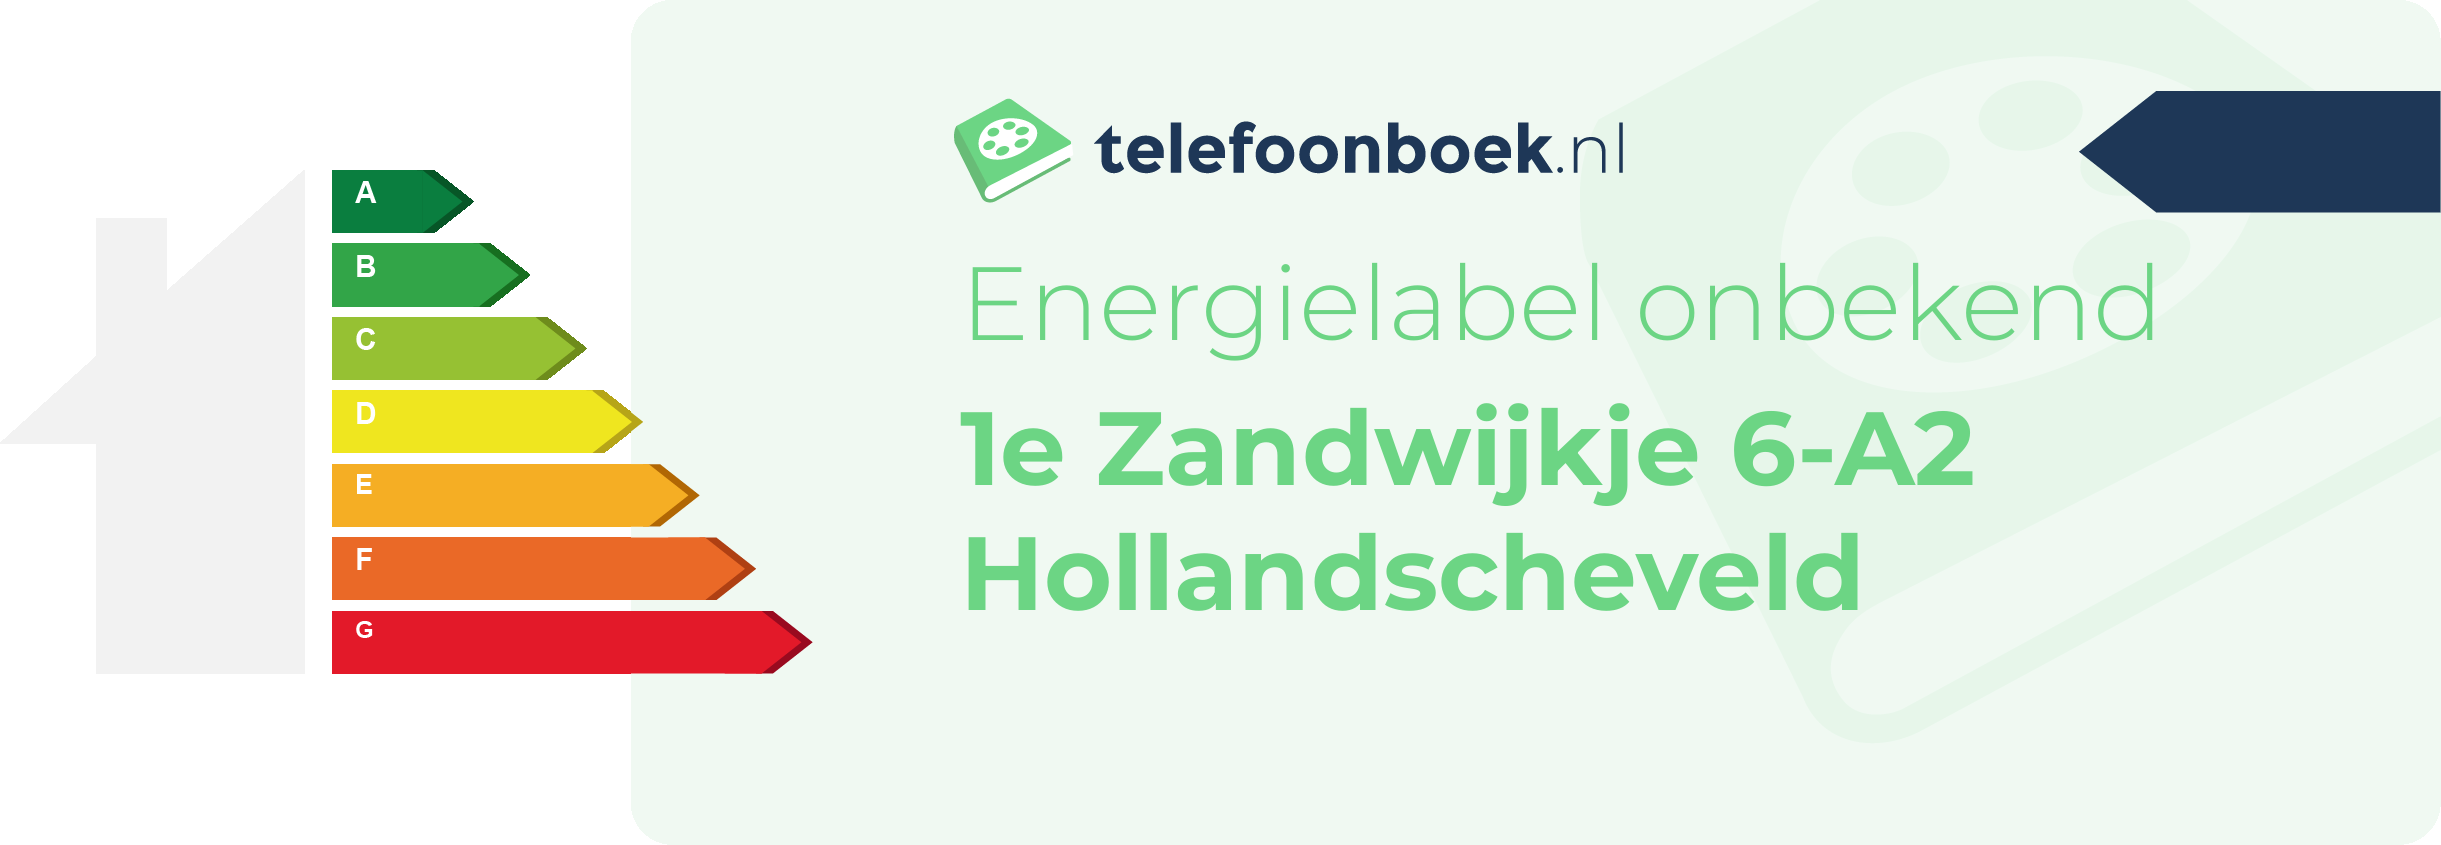 Energielabel 1e Zandwijkje 6-A2 Hollandscheveld